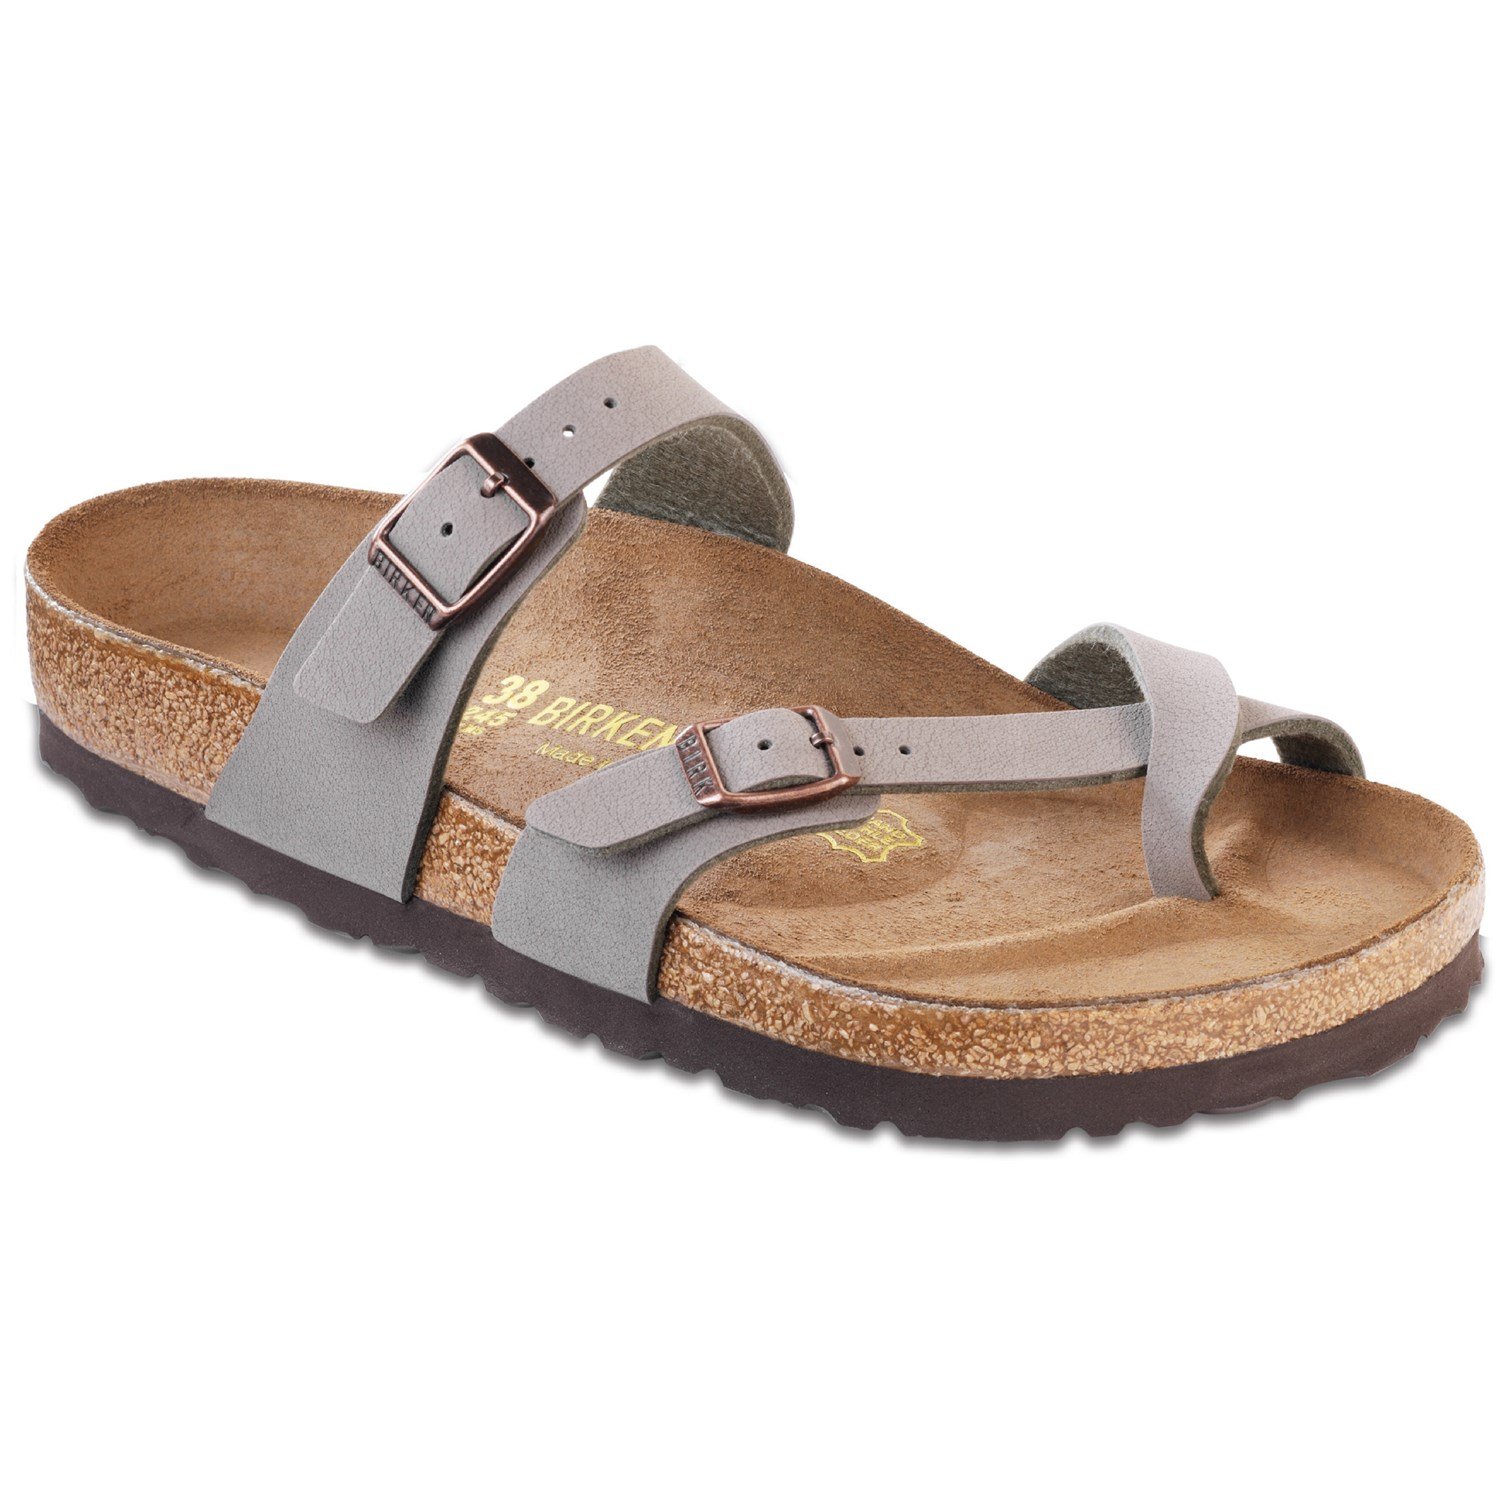 birkenstock sandals womens sale off 54 